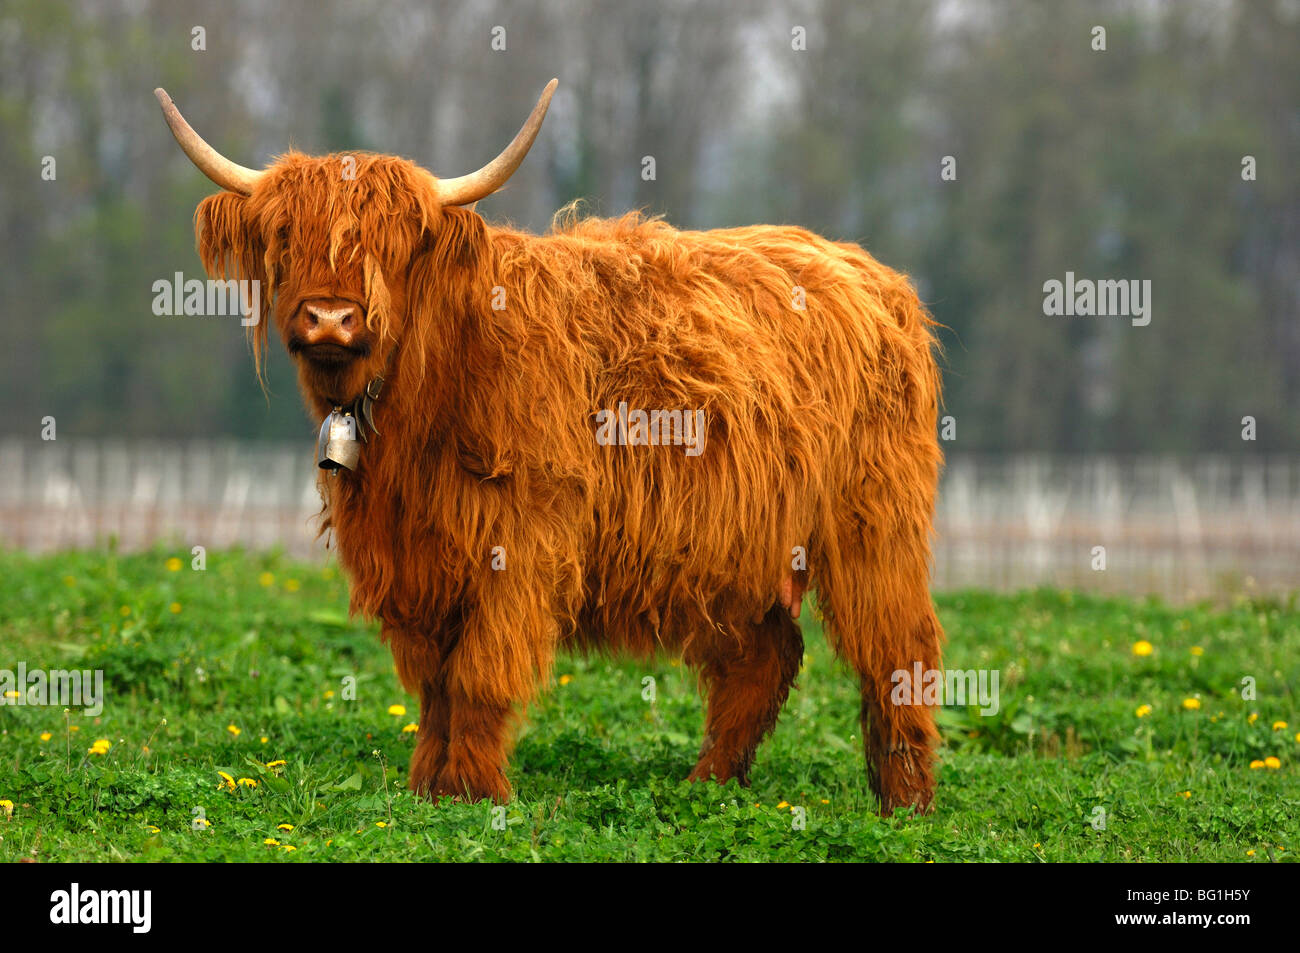 Les vaches avec des cornes en forme, Highland cattle, kyloe Banque D'Images